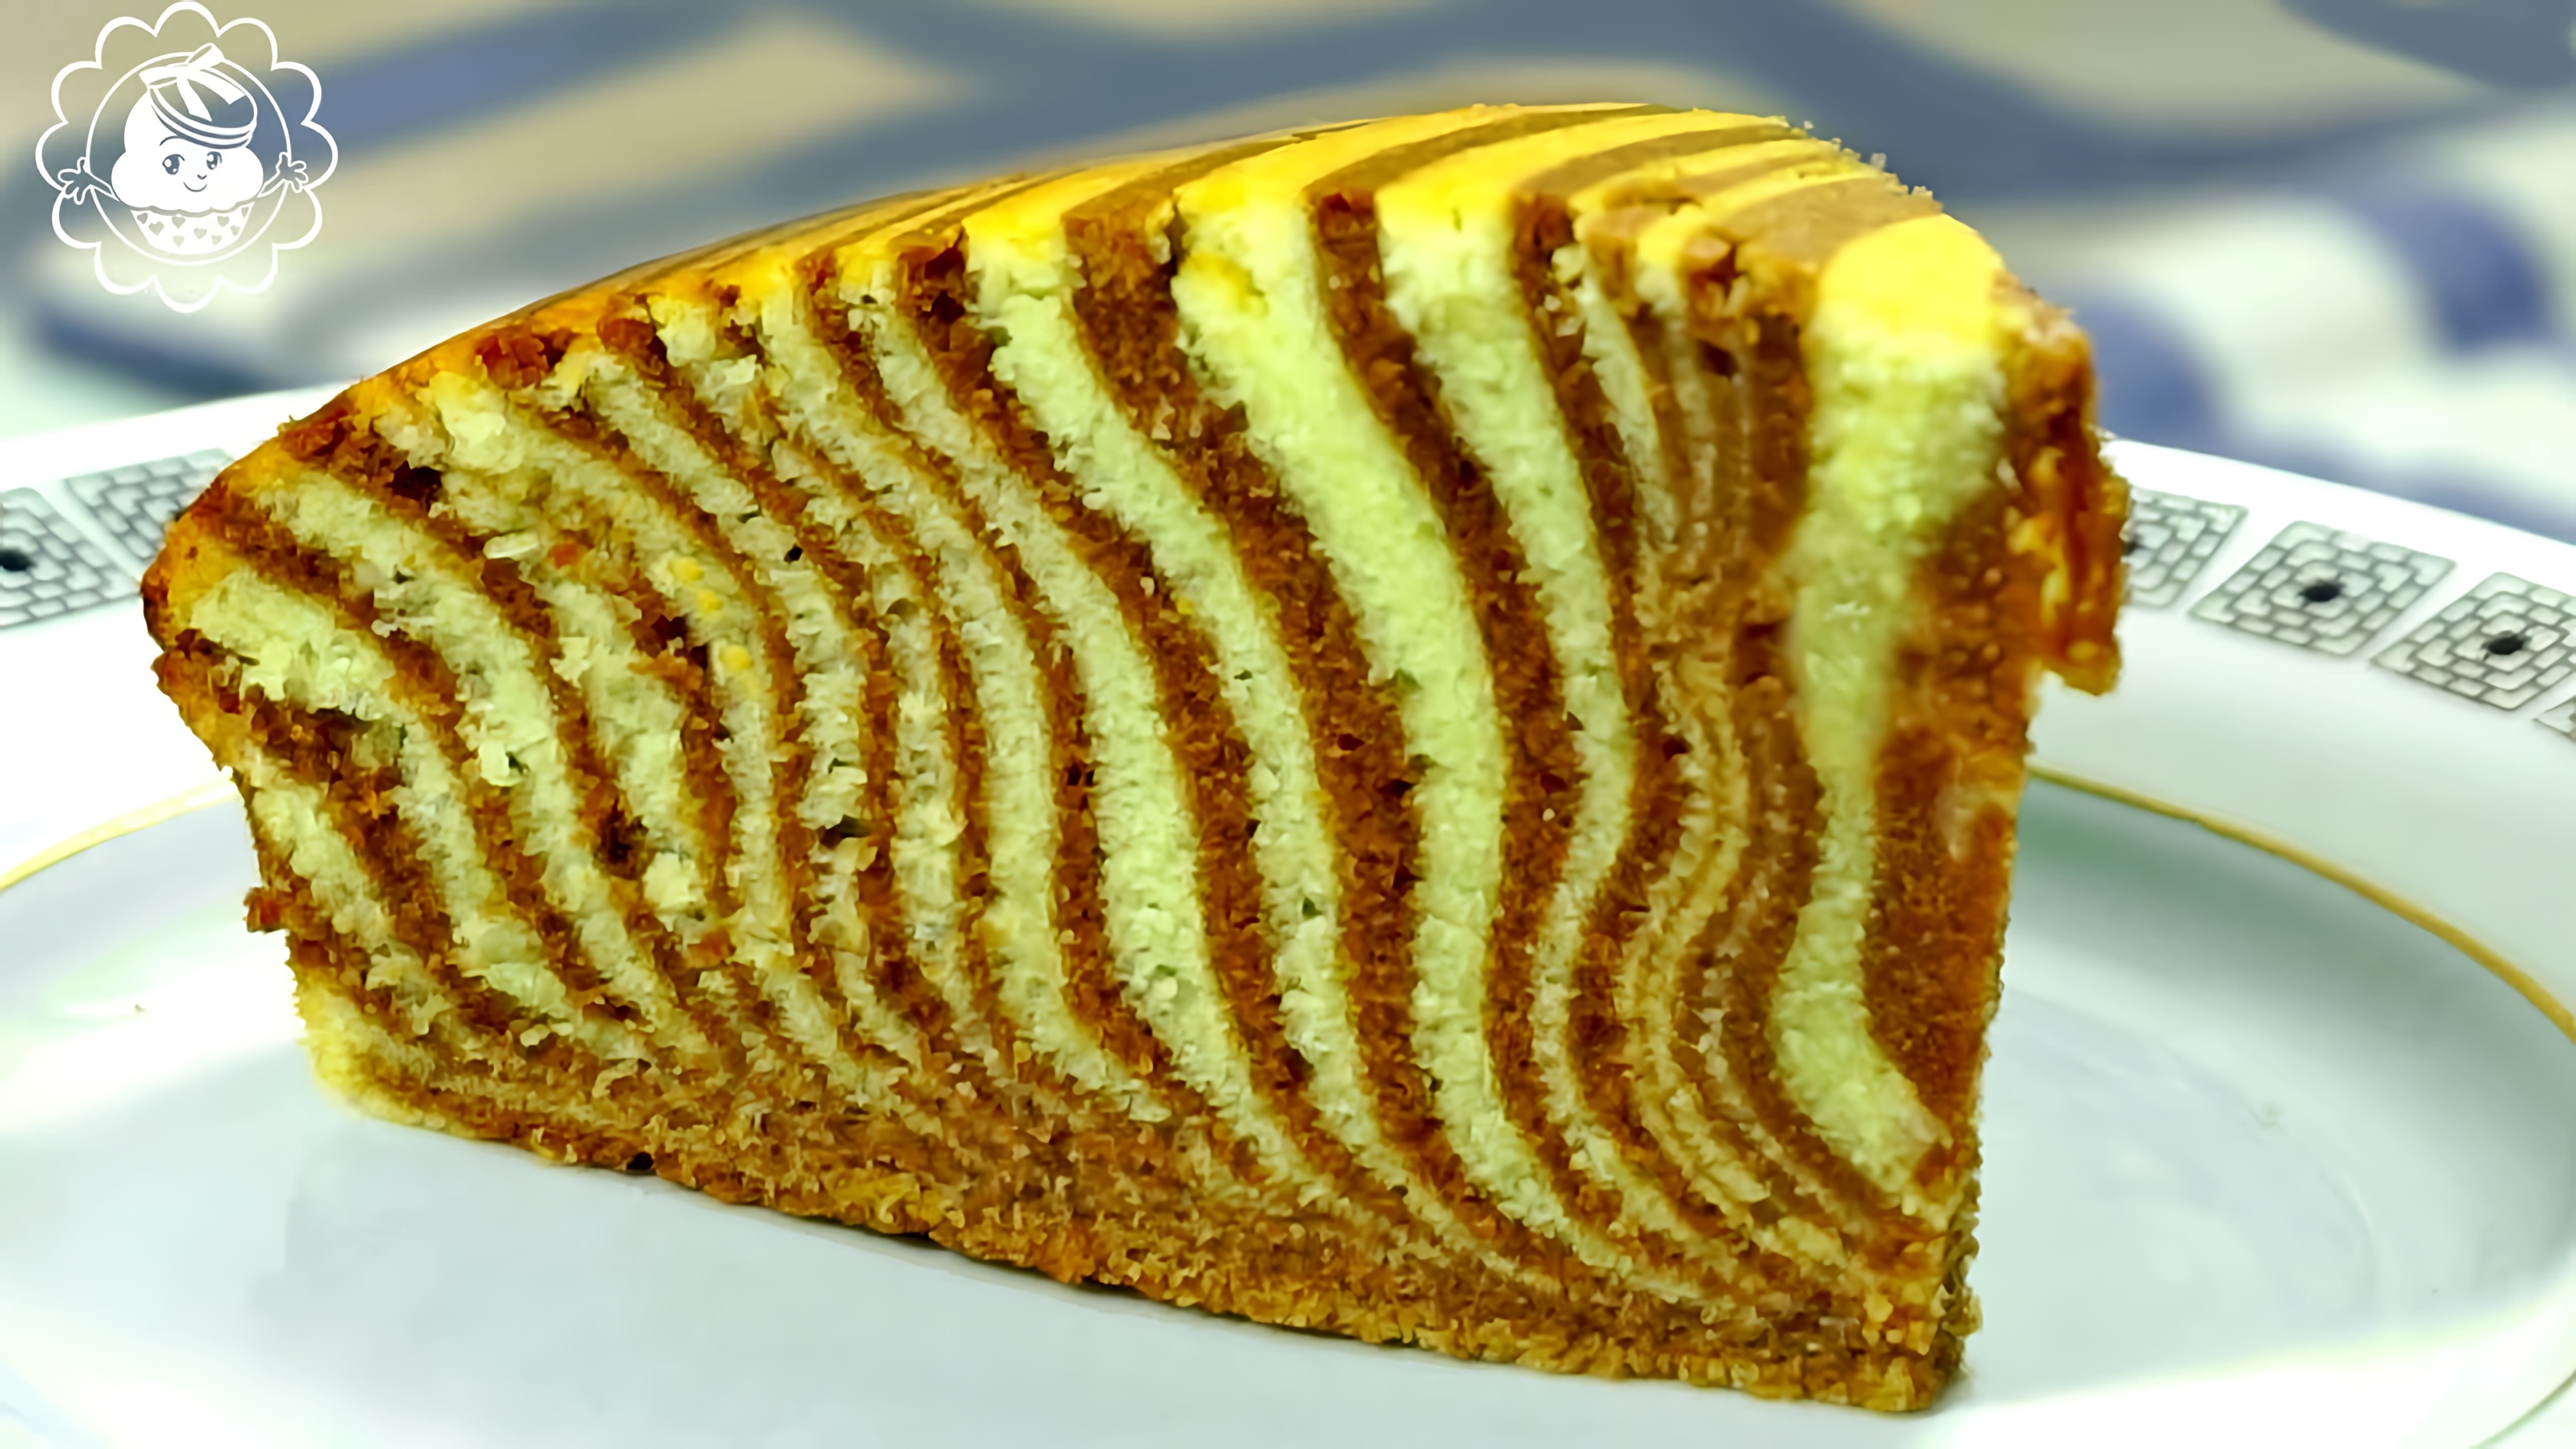 Торт "Зебра" - это очень вкусный и влажный бисквит, который можно приготовить по простому рецепту